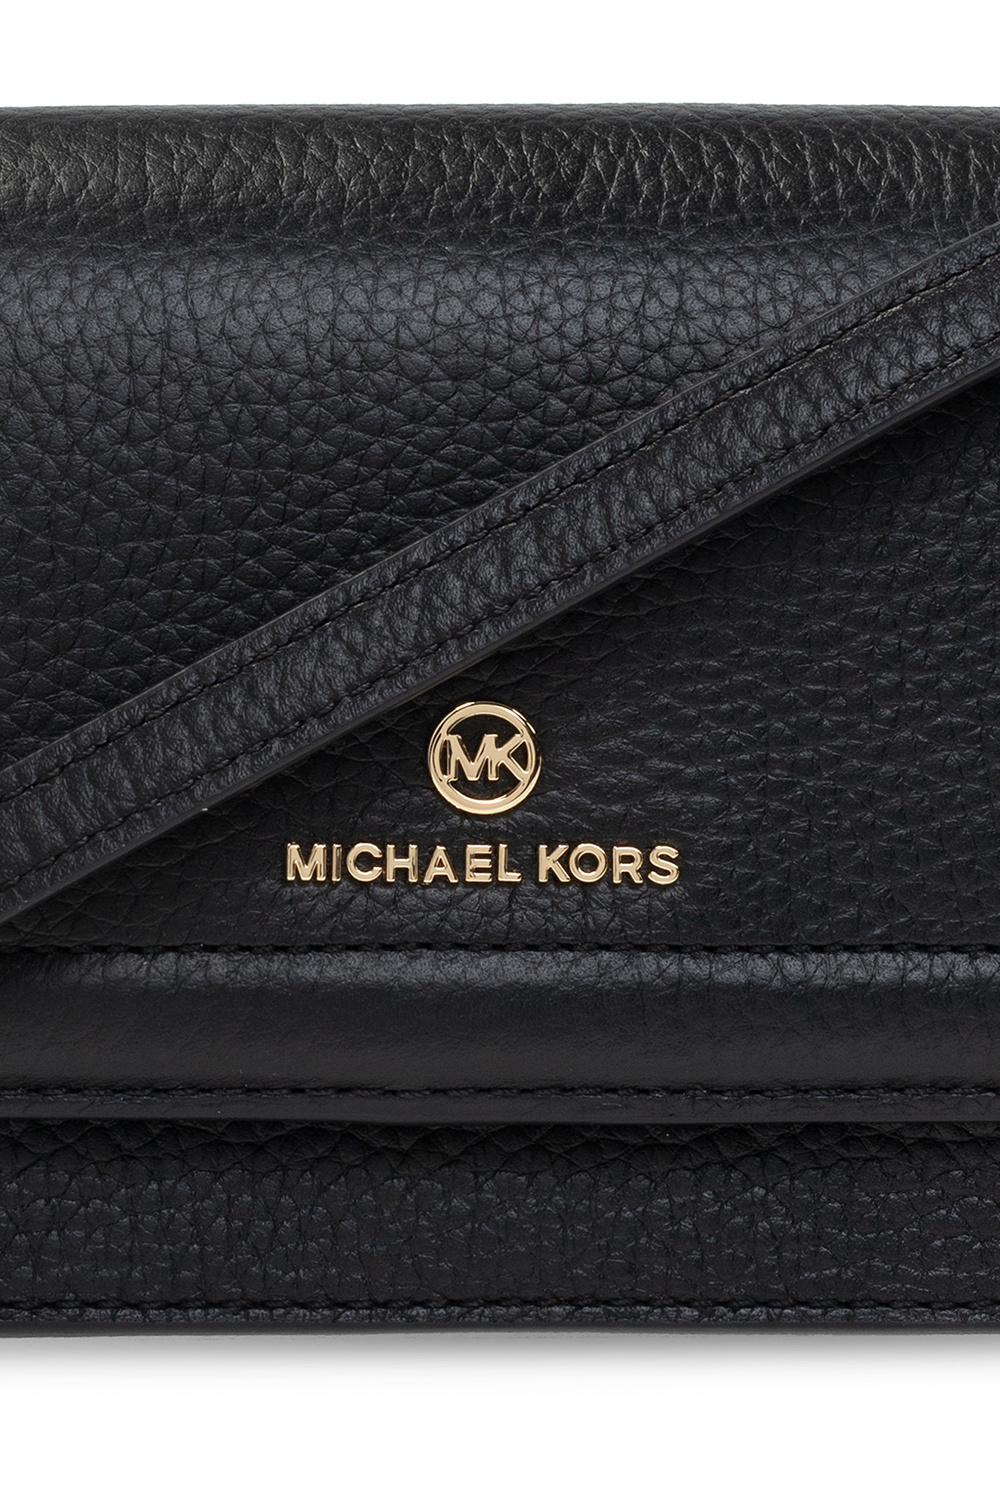 Michael Michael Kors ‘Jet Set Charm’ Wallet on Strap Women's Brown | Vitkac